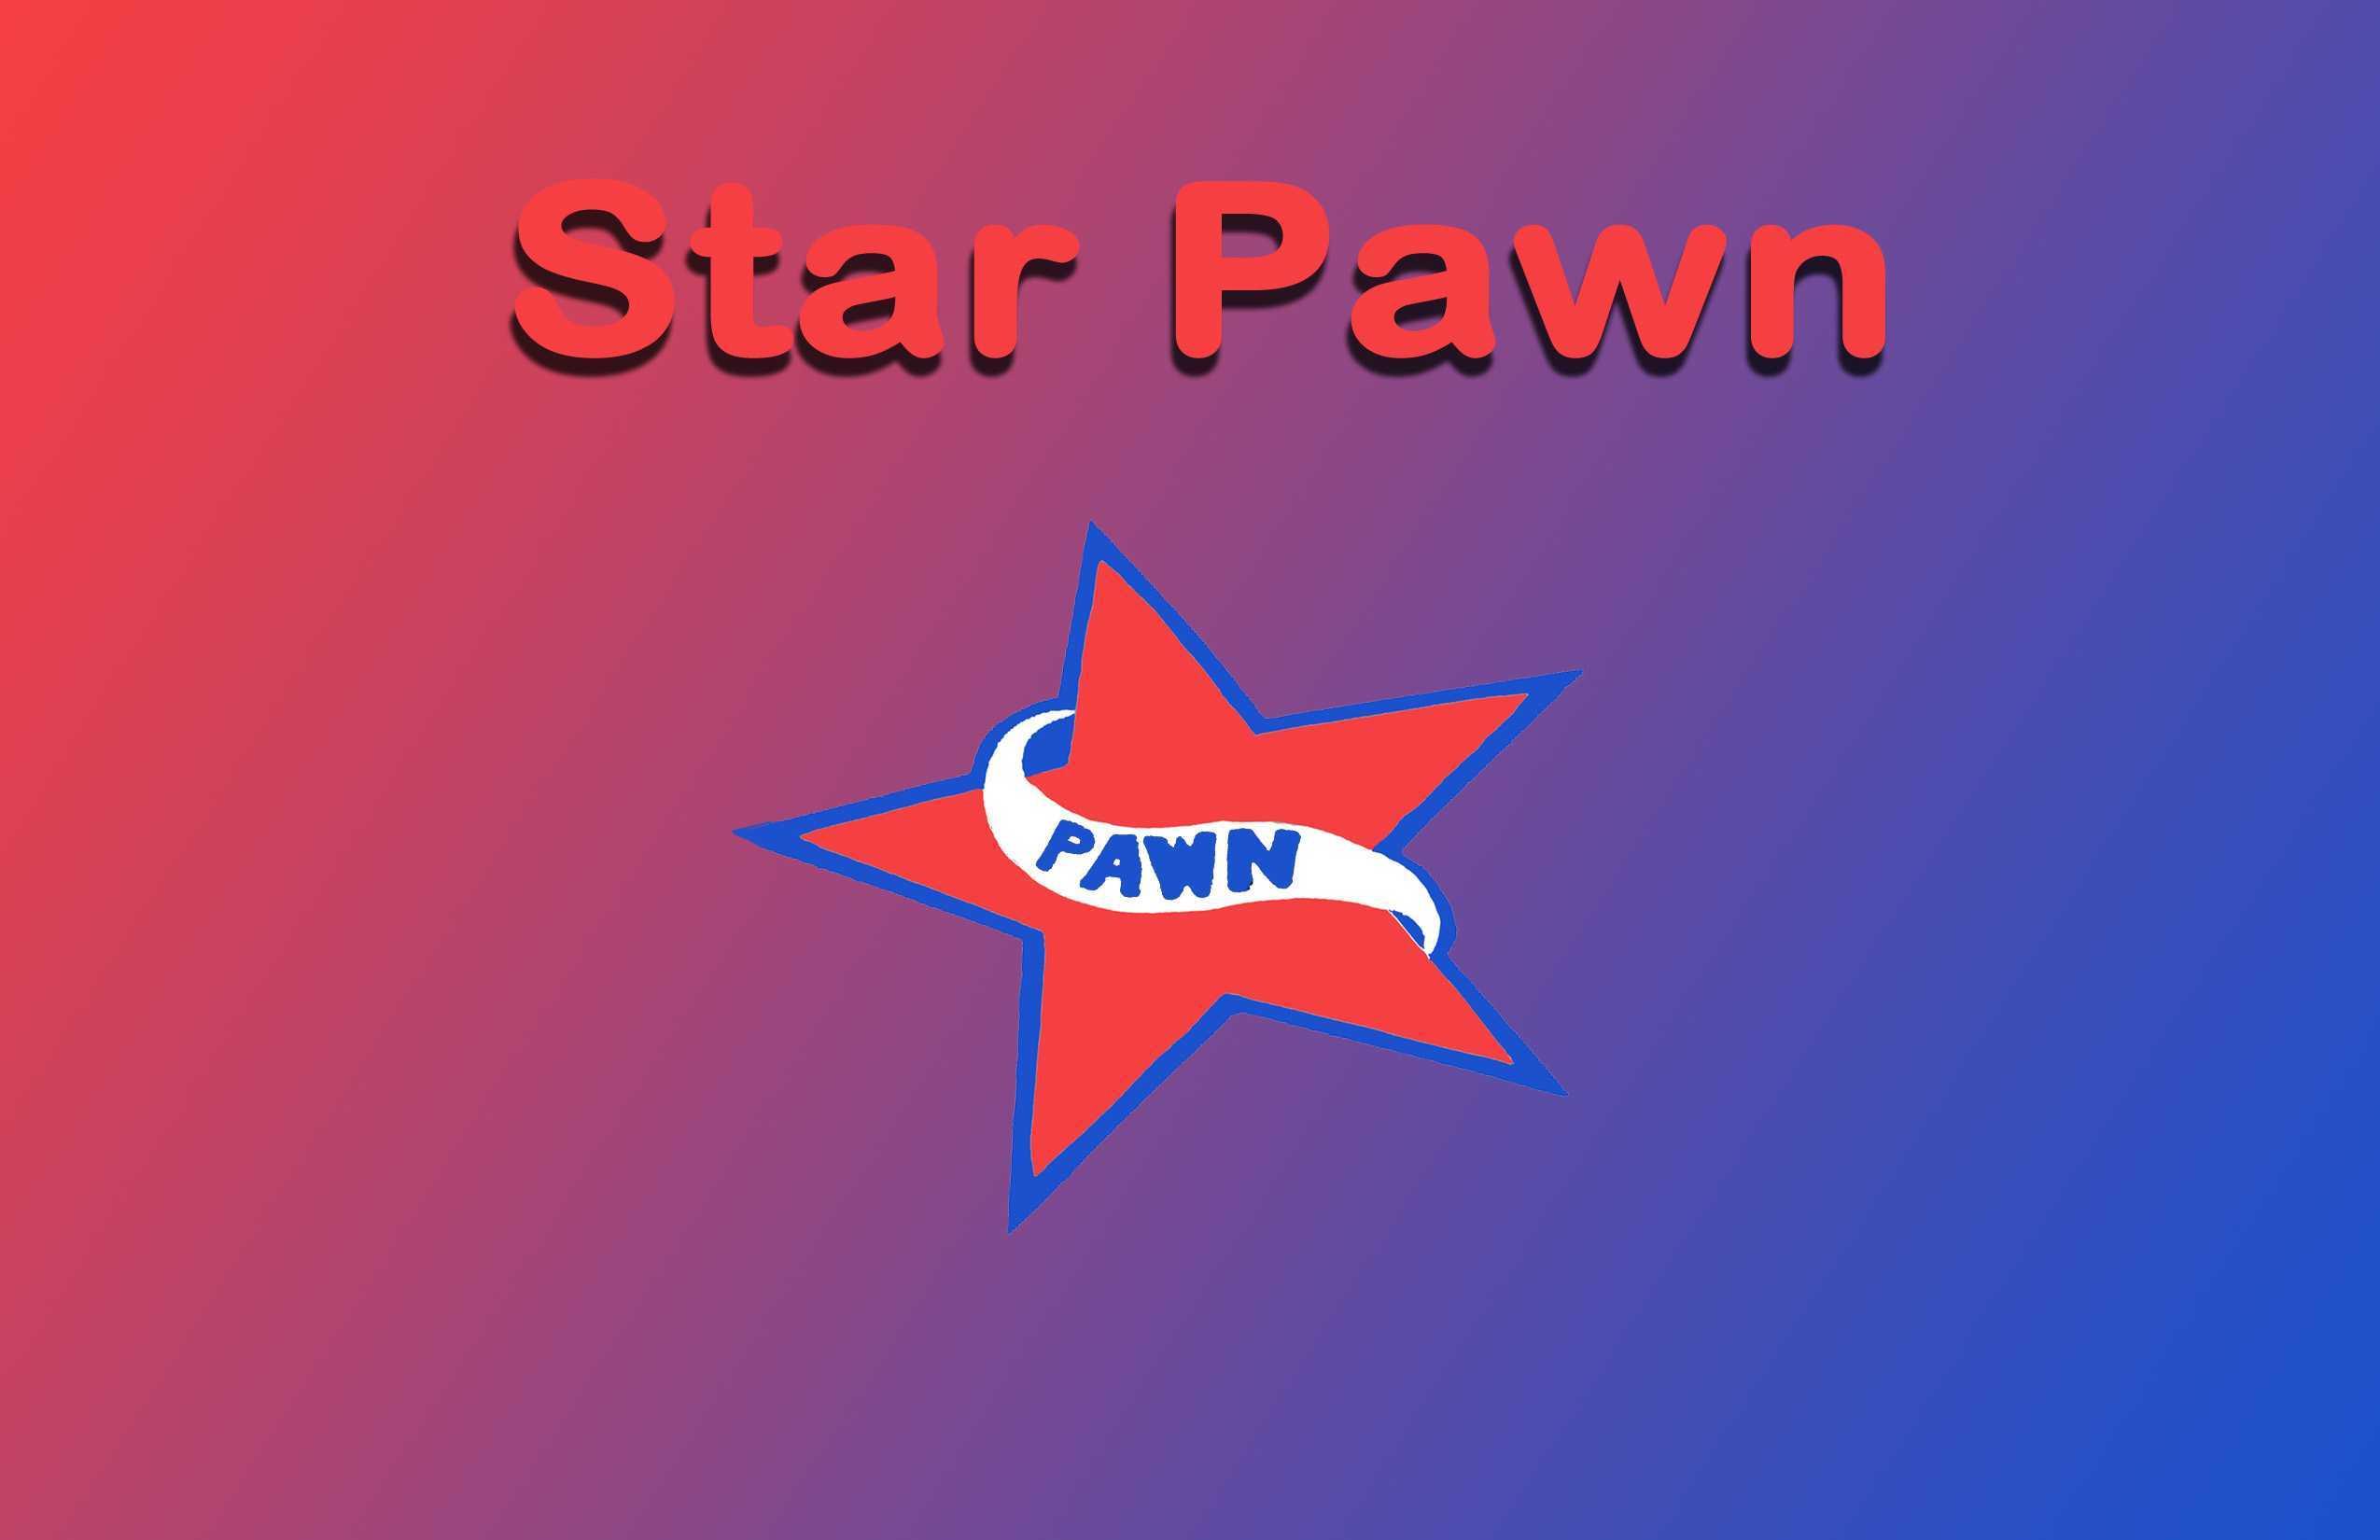 Star Pawn